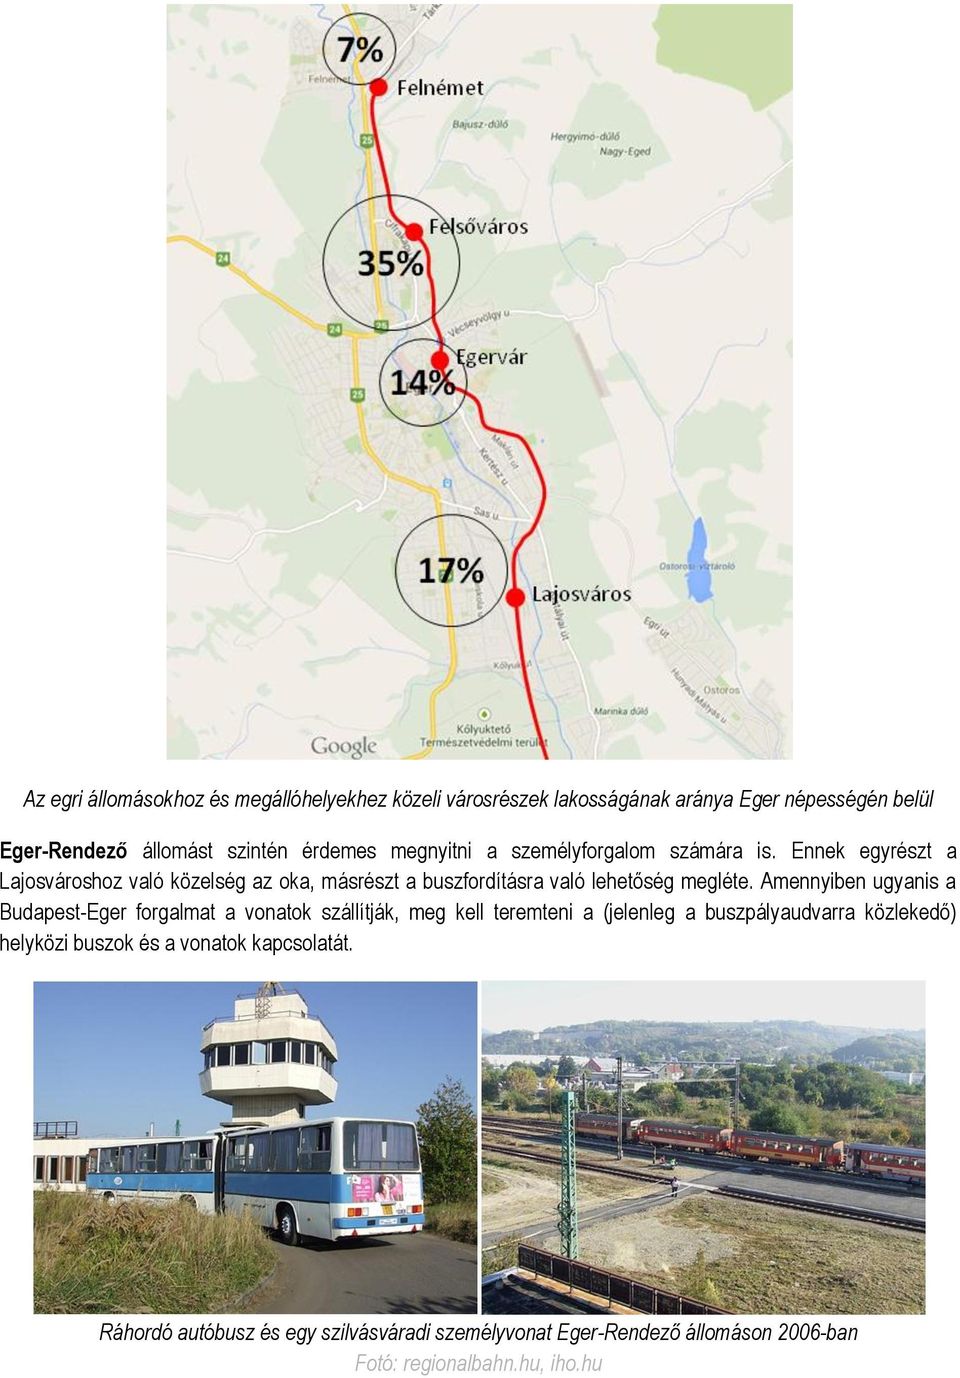 Amennyiben ugyanis a Budapest-Eger forgalmat a vonatok szállítják, meg kell teremteni a (jelenleg a buszpályaudvarra közlekedő) helyközi